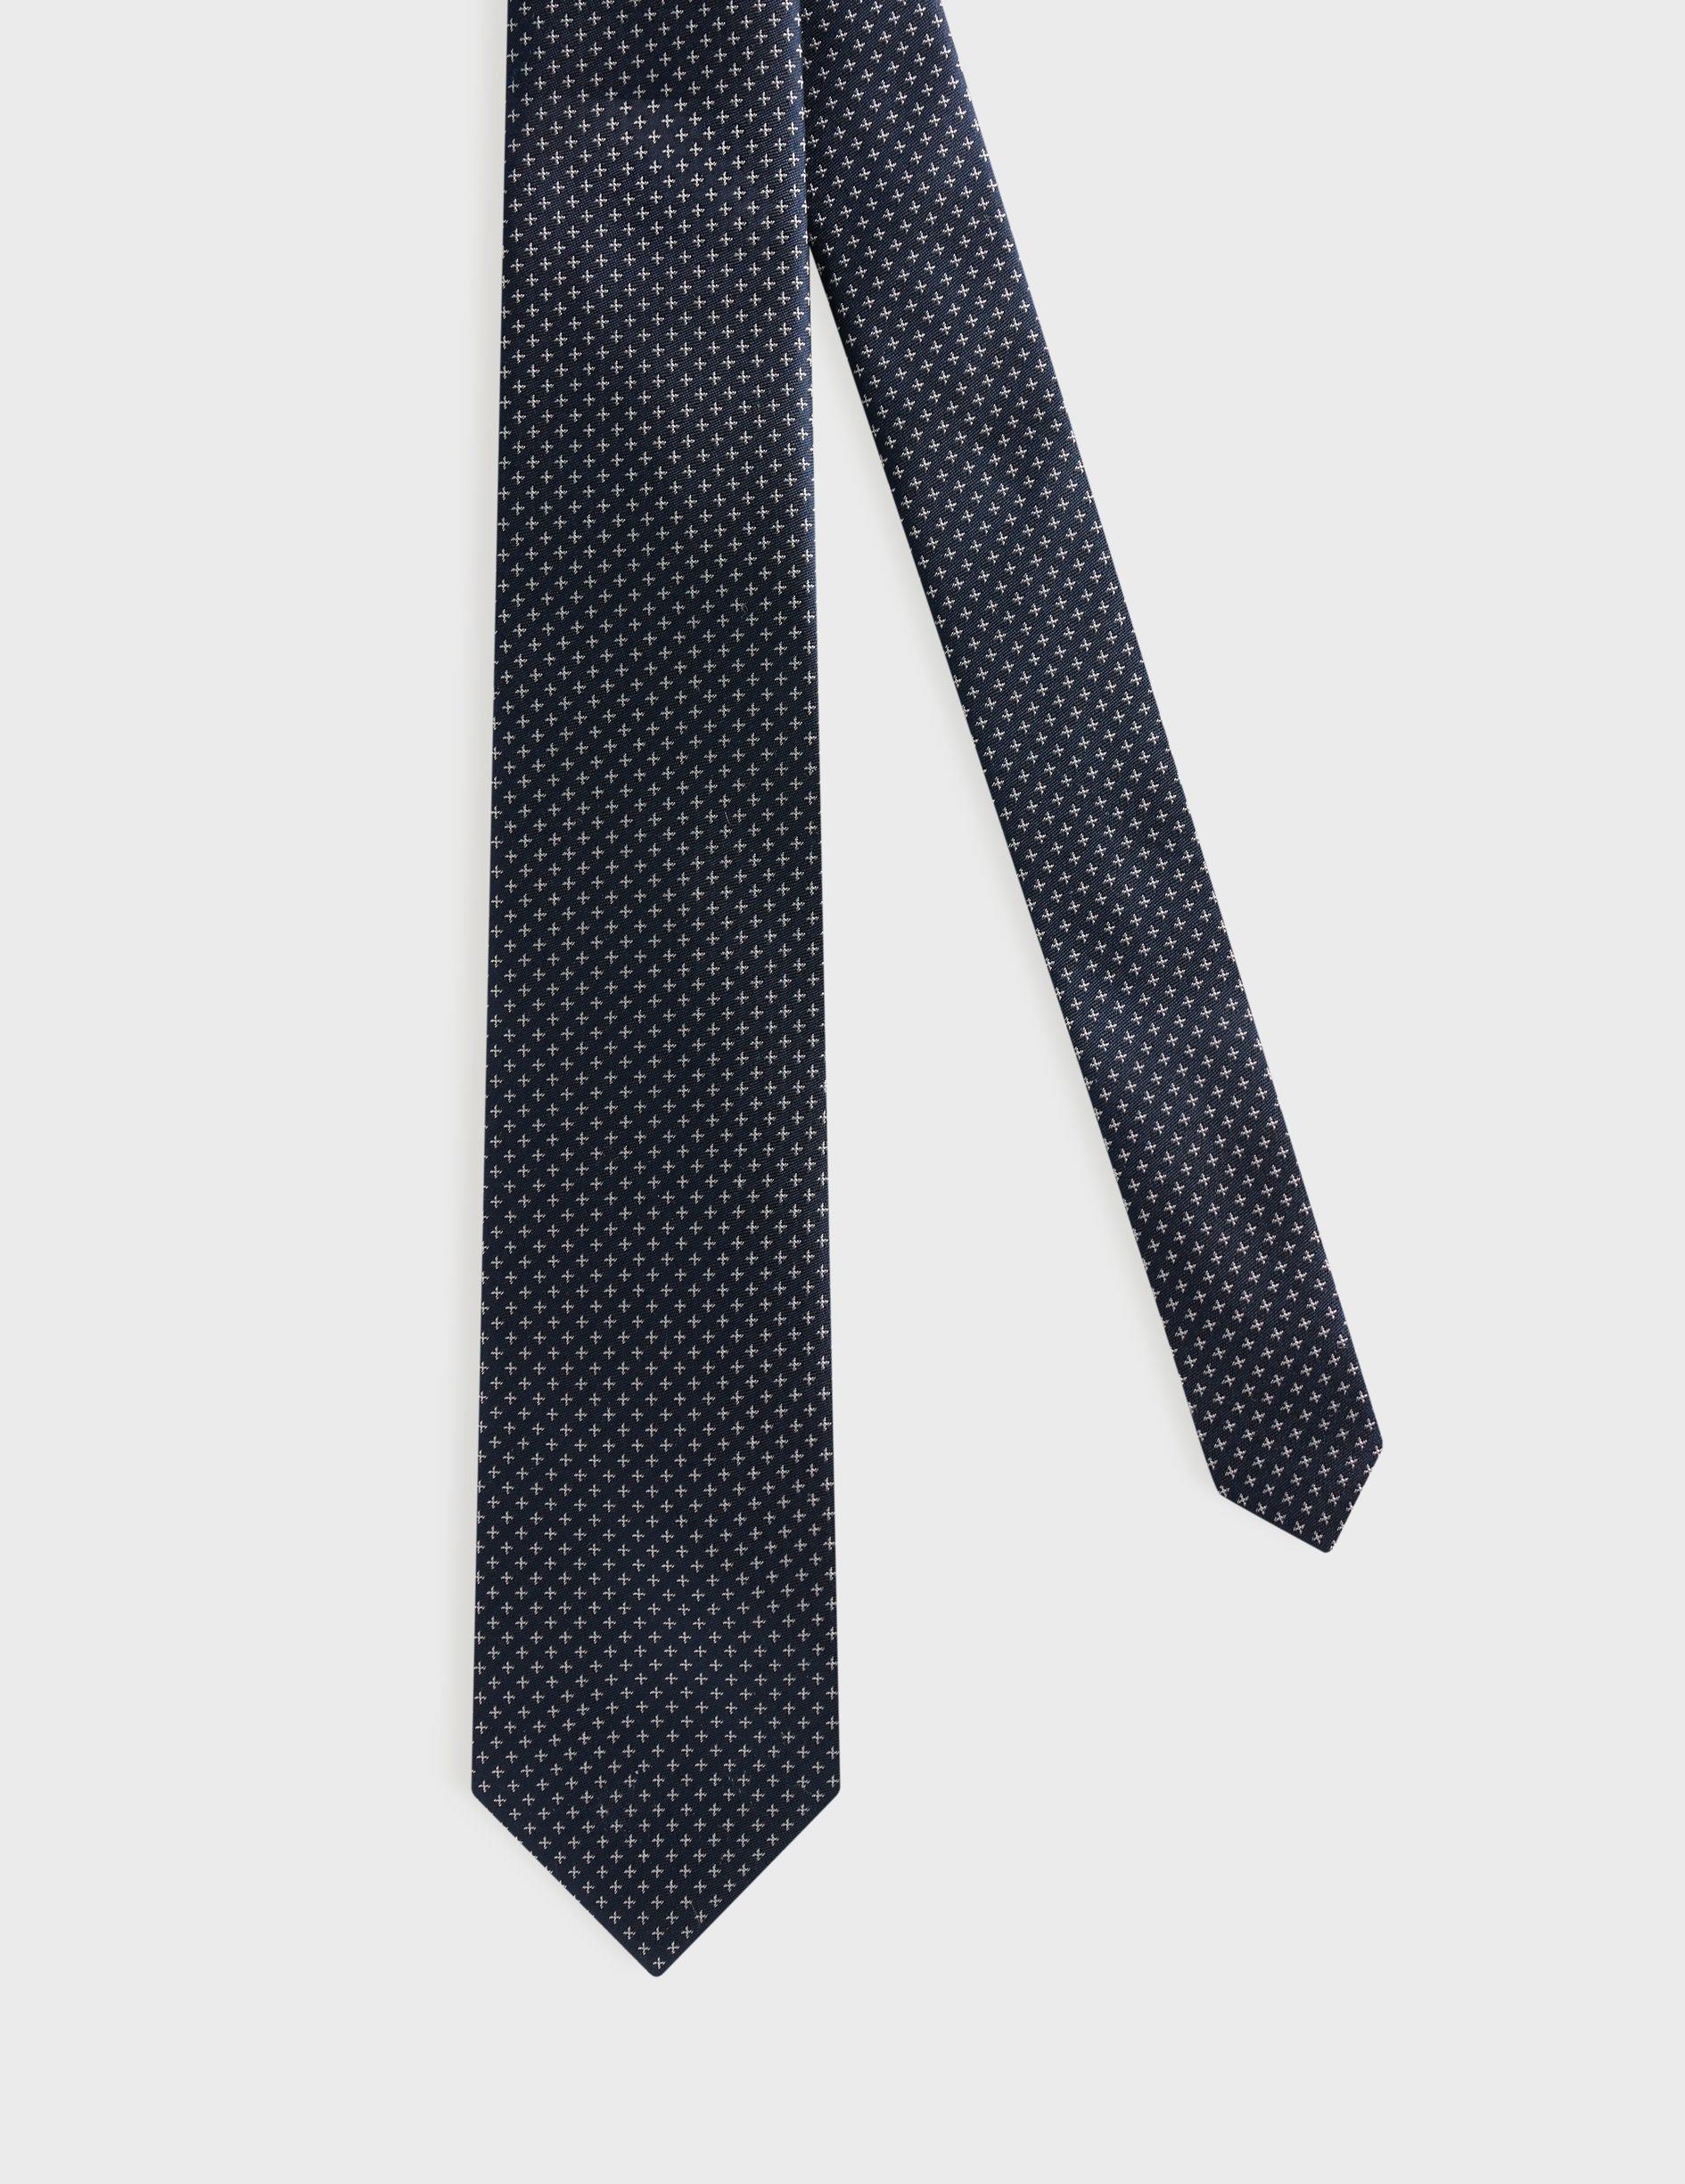 Fine patterned blue silk tie